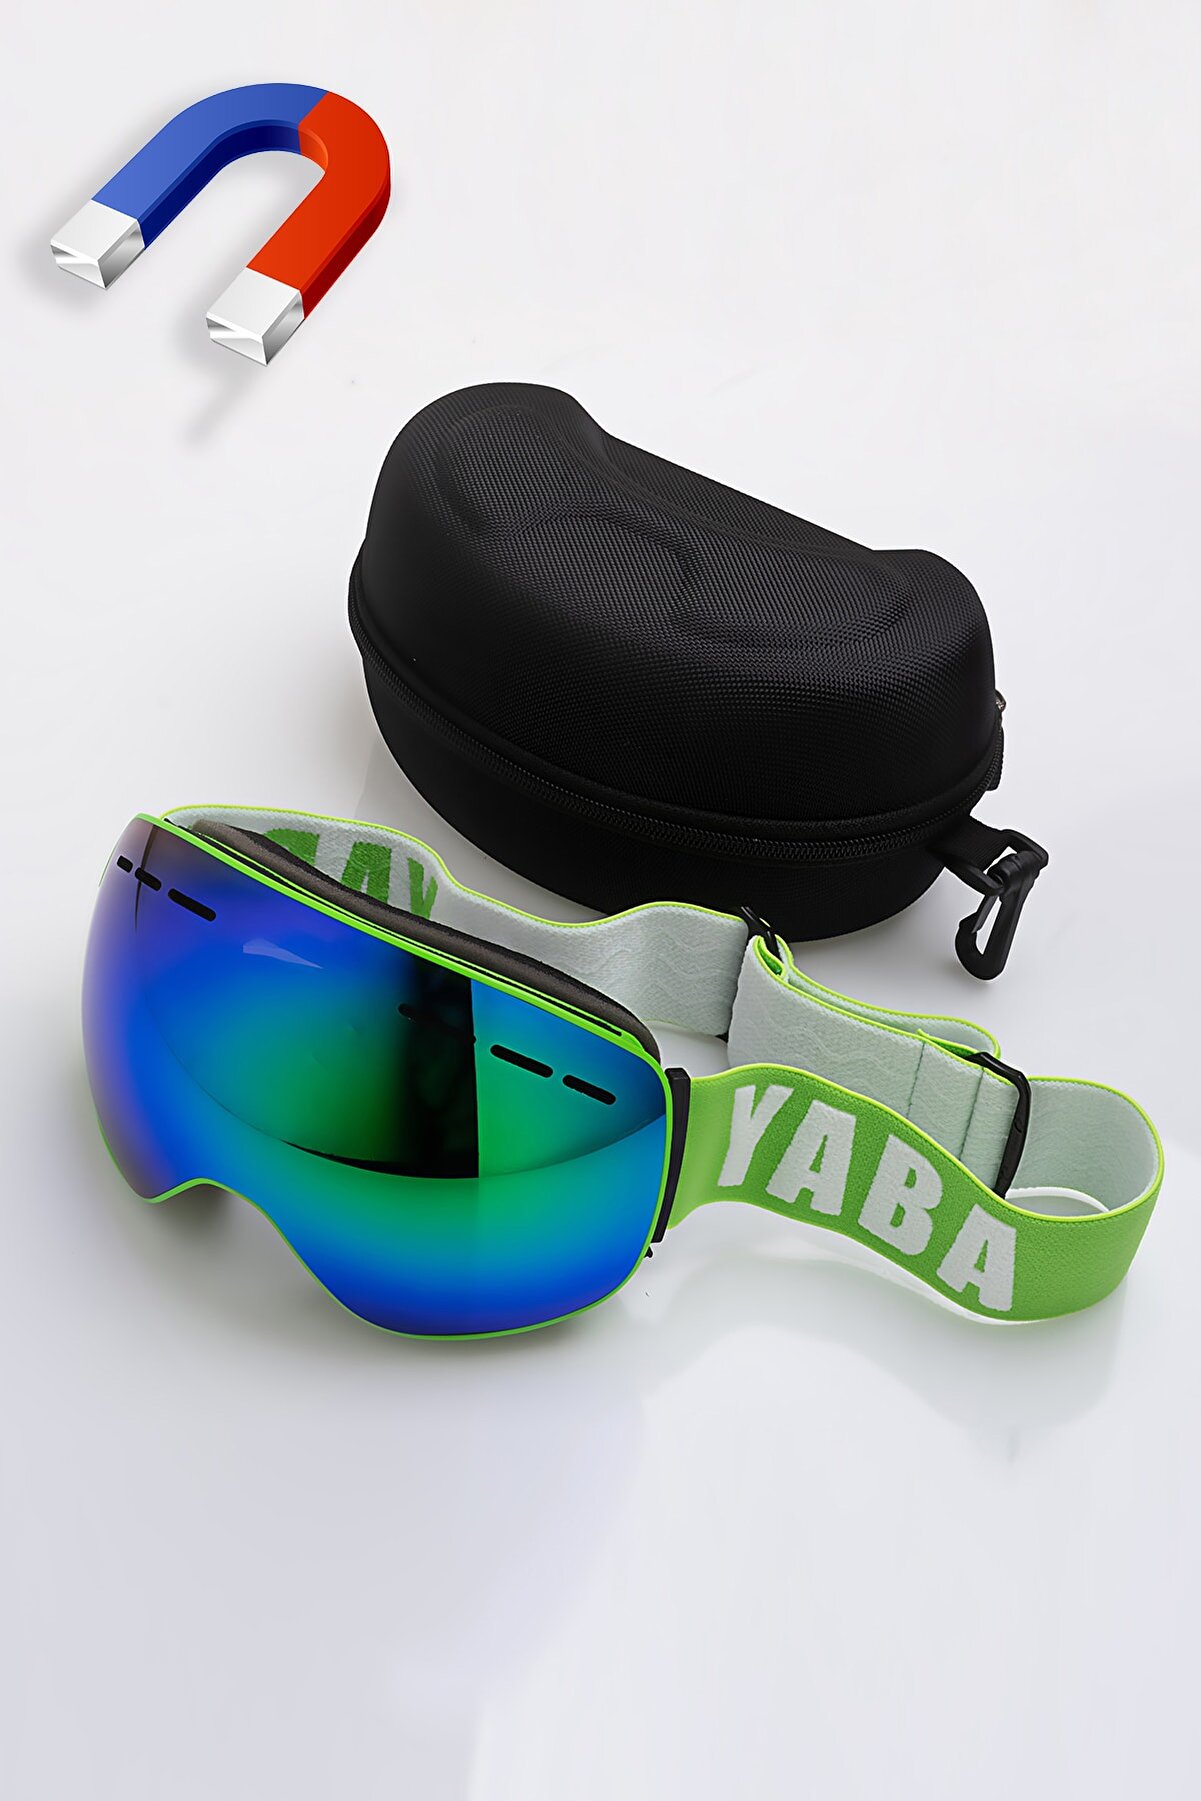 YABA Manyetik Kayak Gözlüğü - Goggle